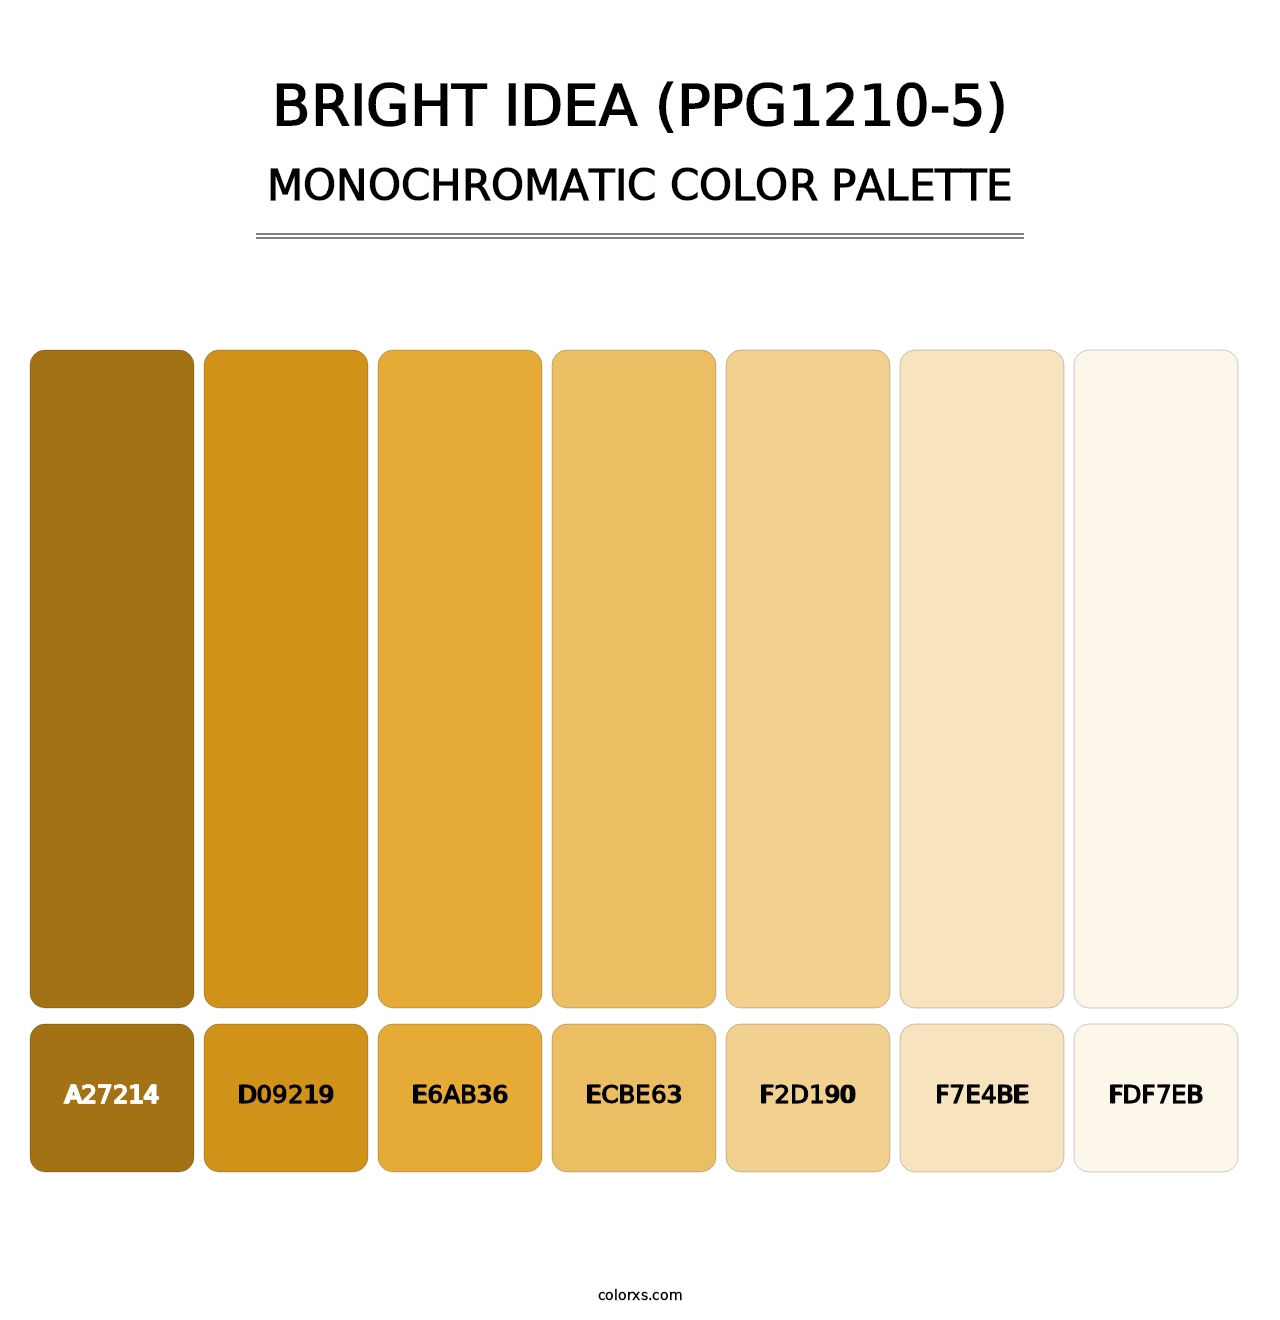 Bright Idea (PPG1210-5) - Monochromatic Color Palette